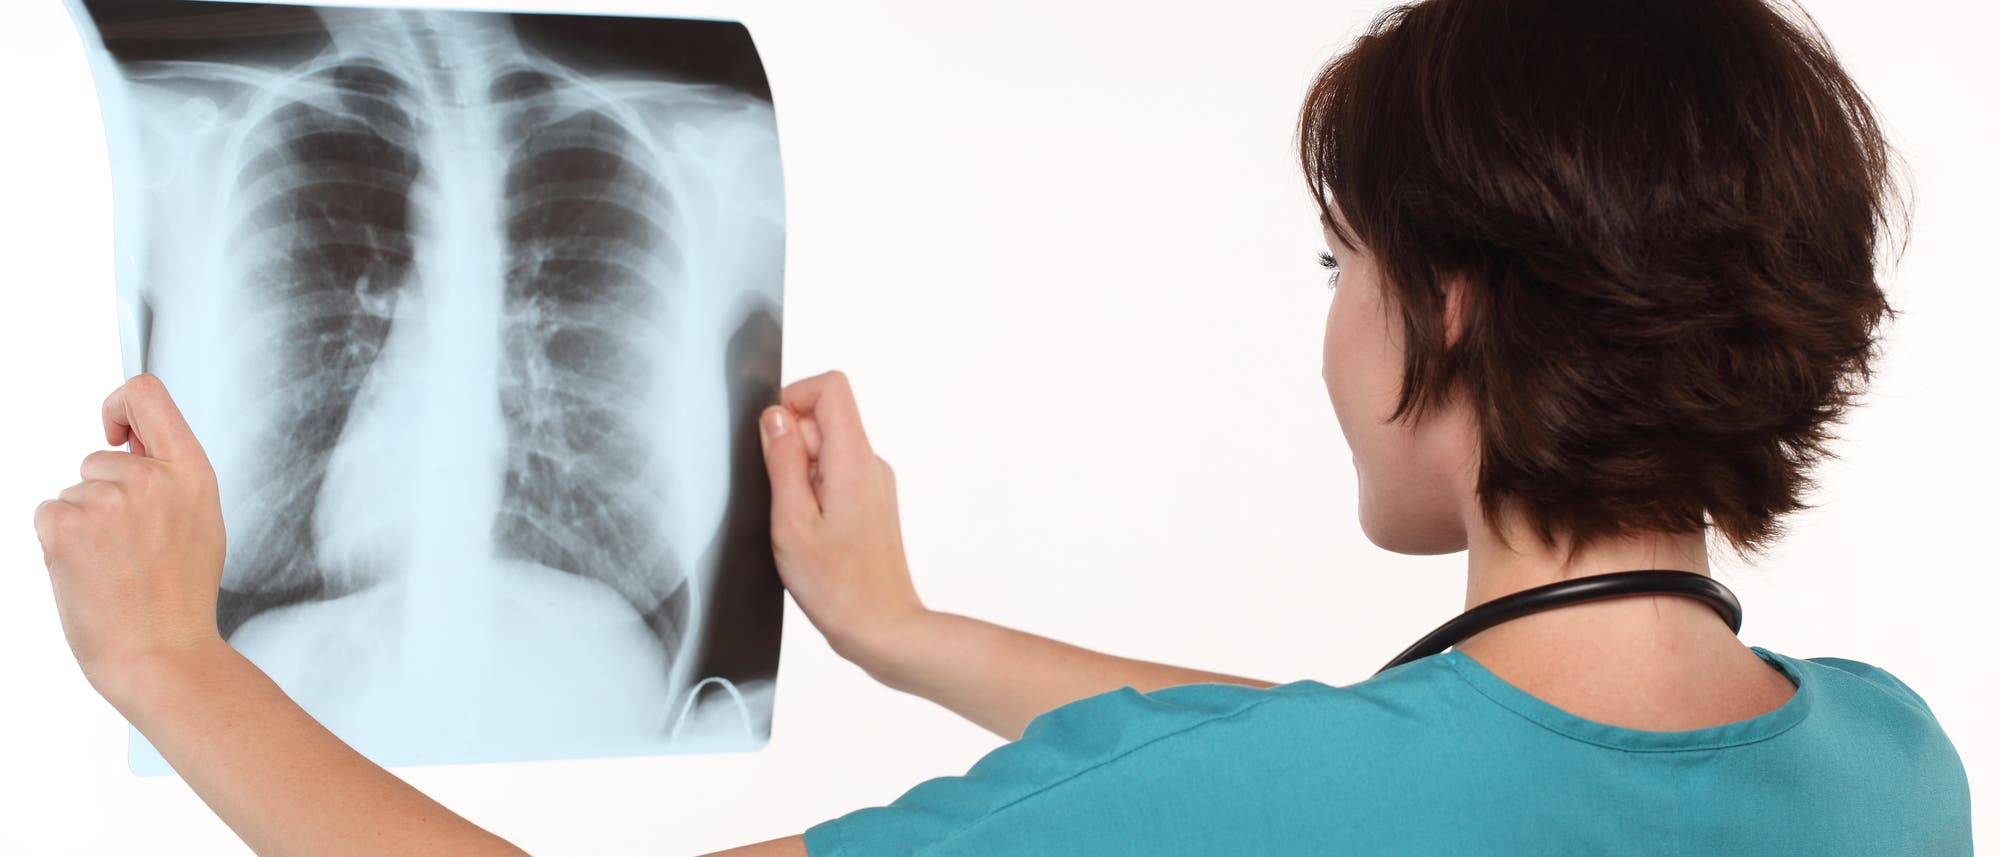 Eine Ärztin betrachtet eine Thorax-Röntgenaufnahme.